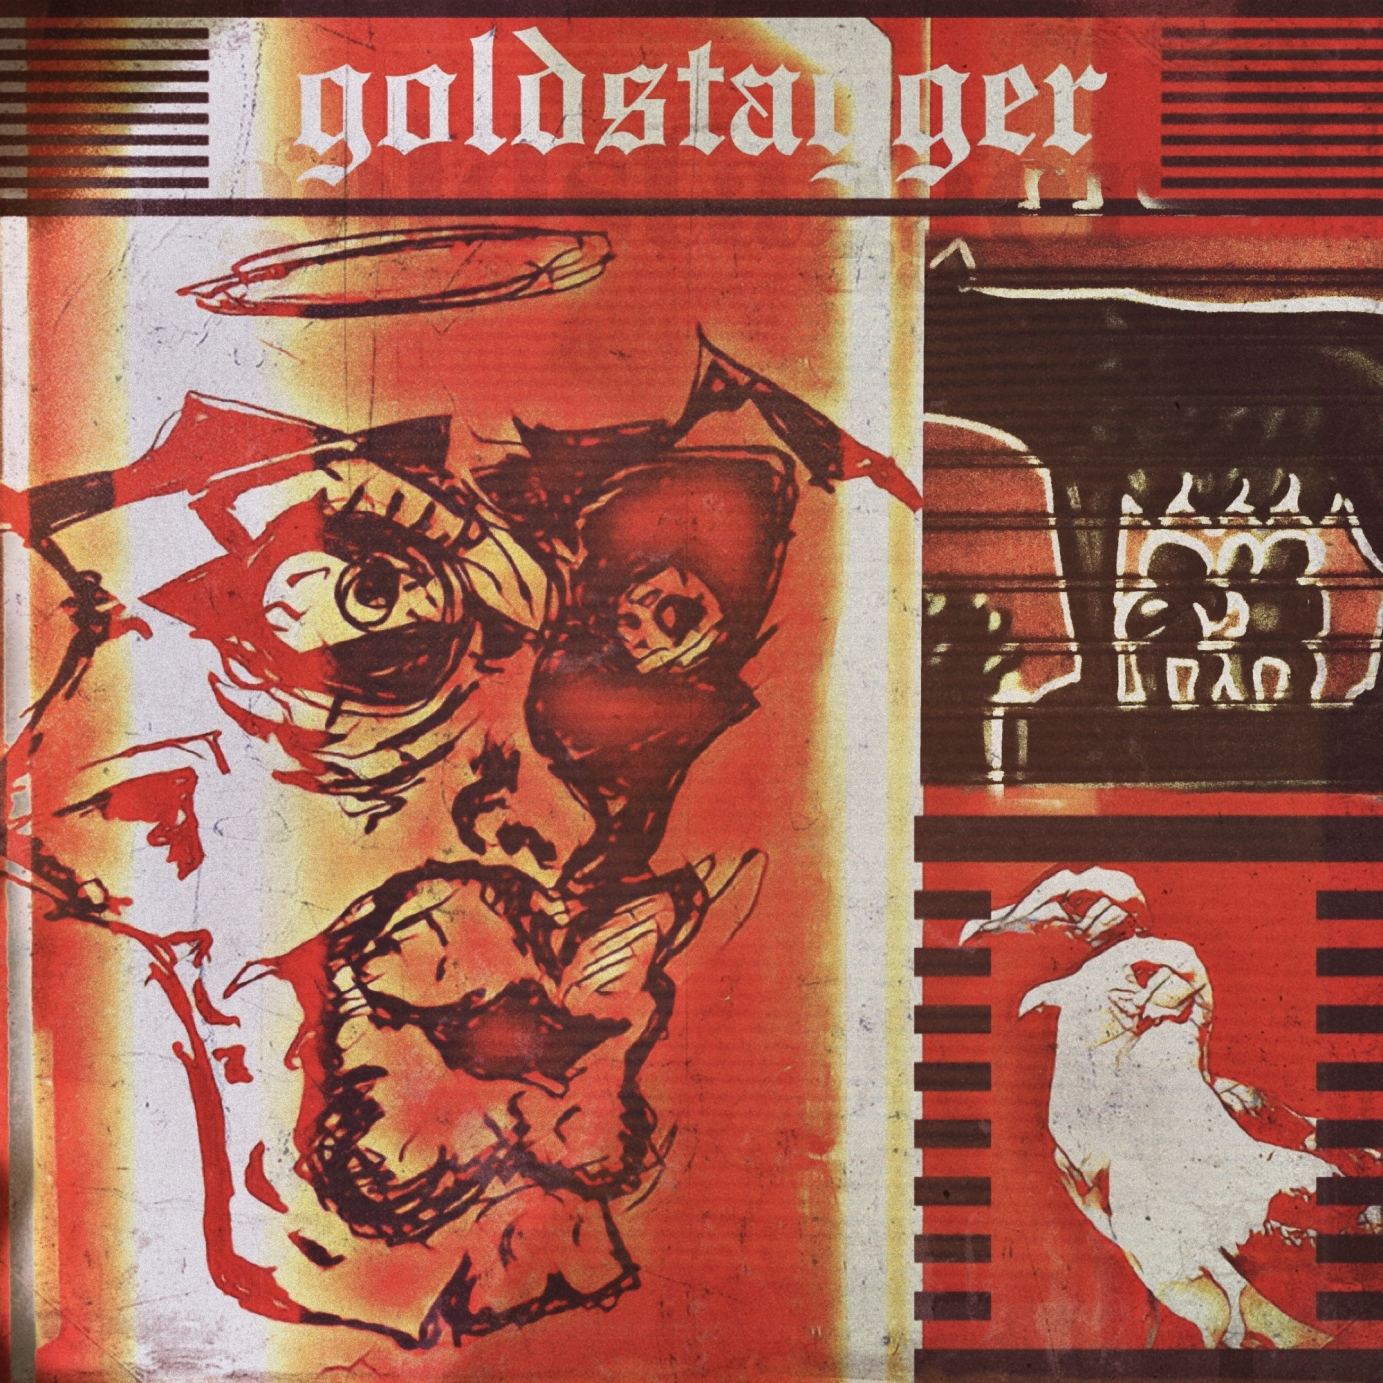 Goldstagger Album Design Options